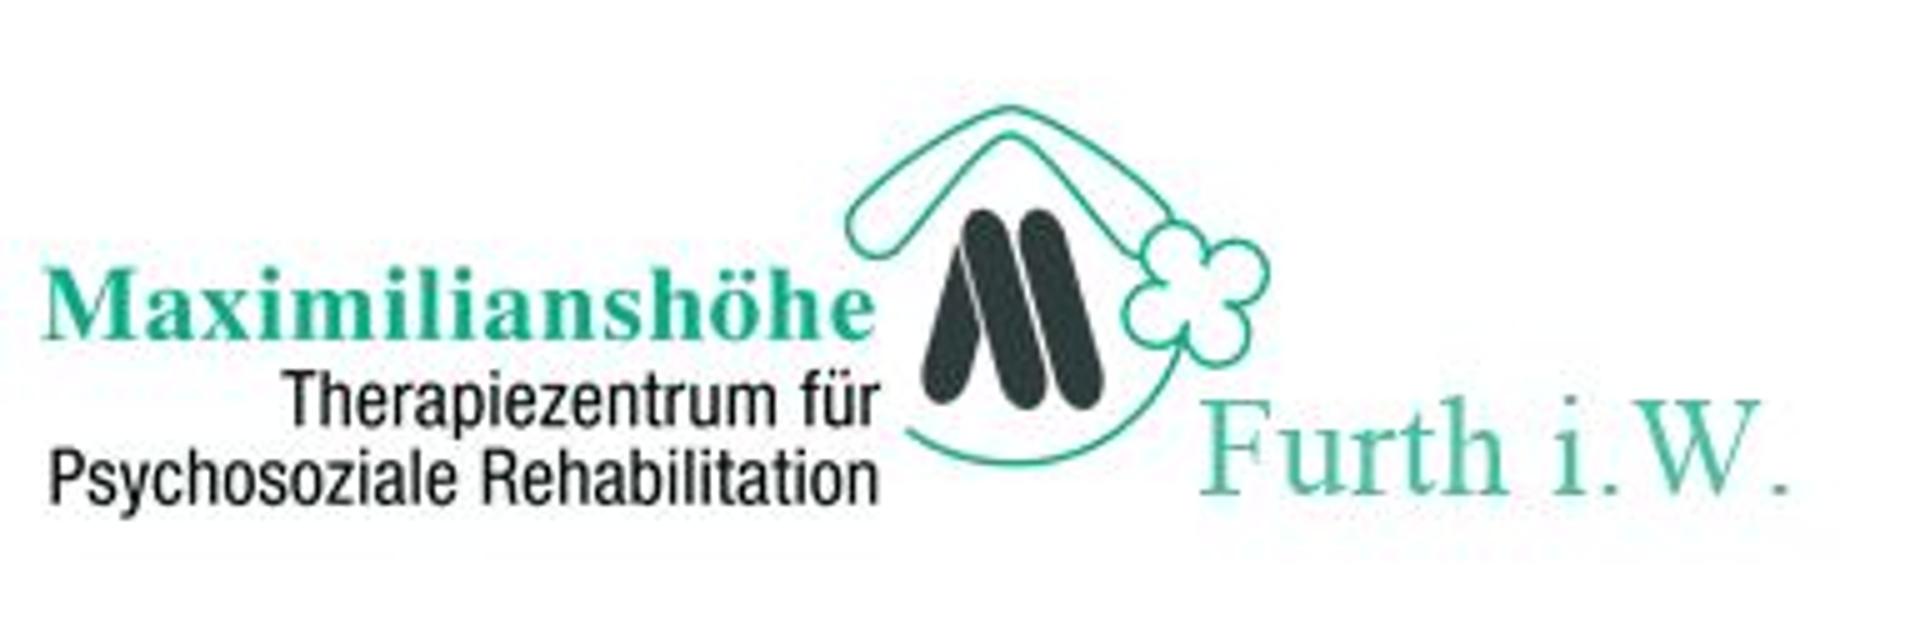 Die Maximilianhöhle ist ein Therapiezentrum für Psychosoziale Rehabilitation.Weitere Informationen finden Sie unter www.maxi-furth.de